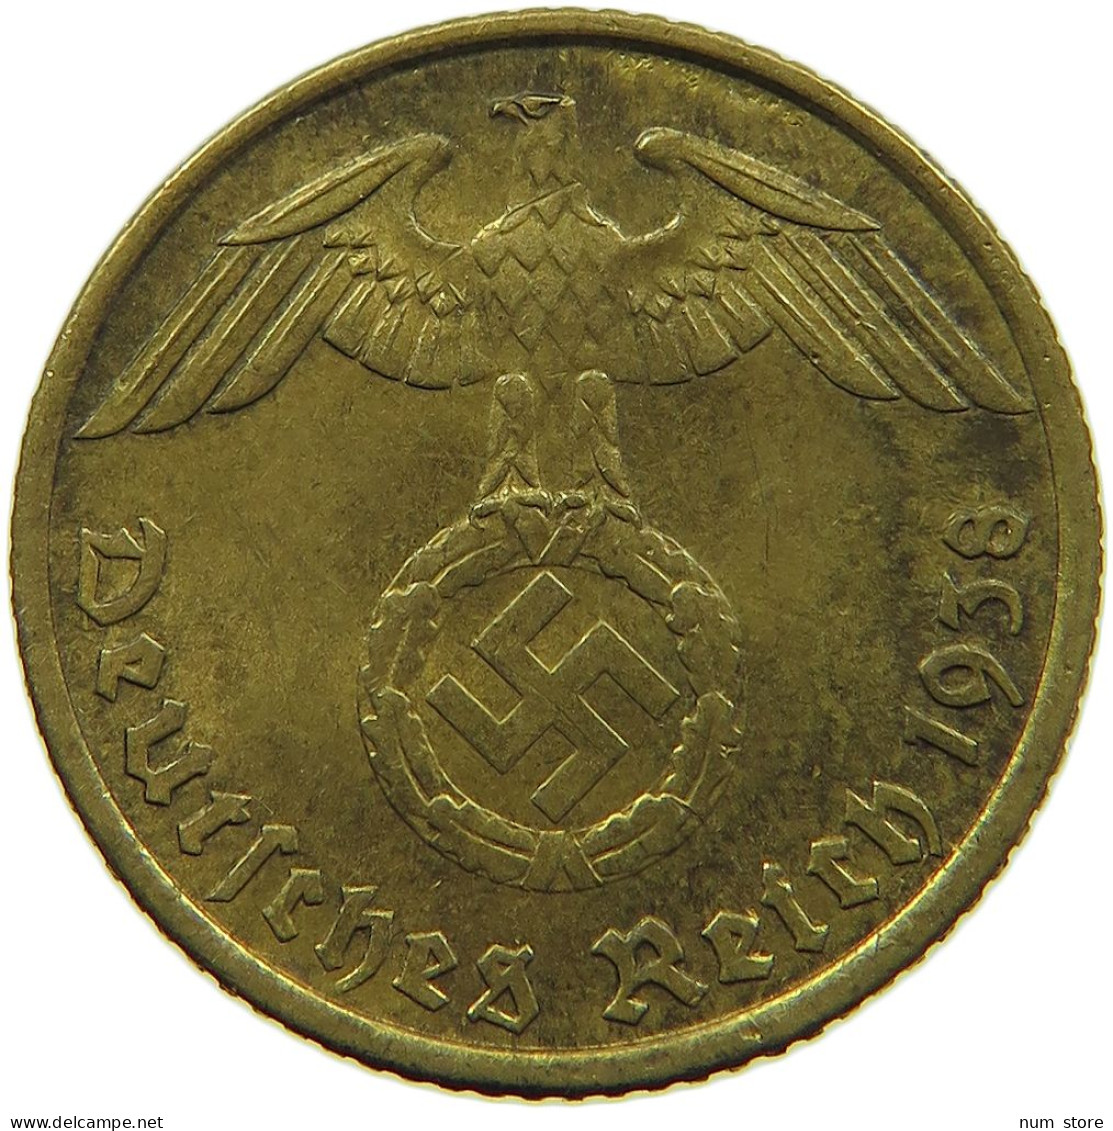 GERMANY 5 REICHSPFENNIG 1938 G #s091 0743 - 5 Reichspfennig